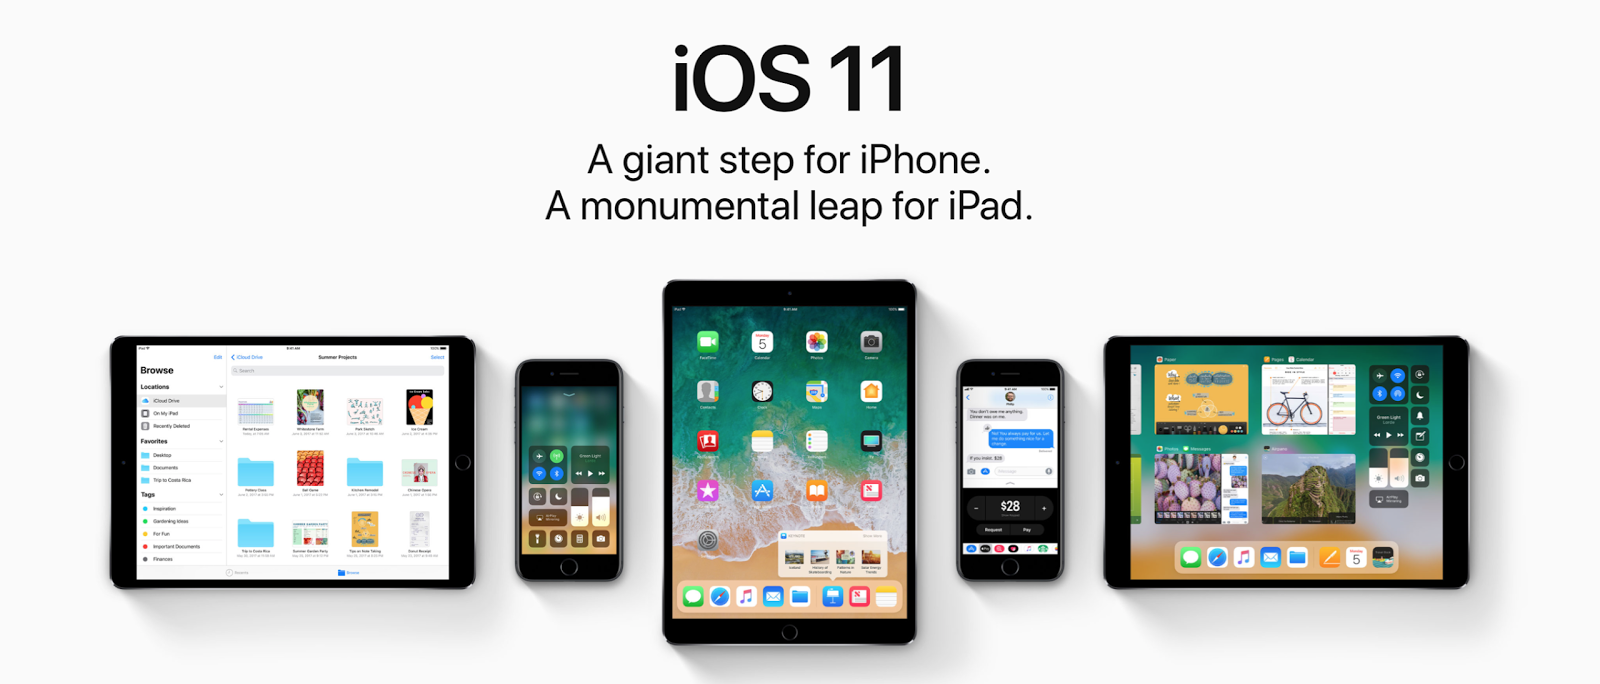 Изображение 1. Обзор новых функций, возможностей и фишек операционной системы iOS 11 для iPhone и iPad. Сравнение операционных систем iOS 11 и iOS 10